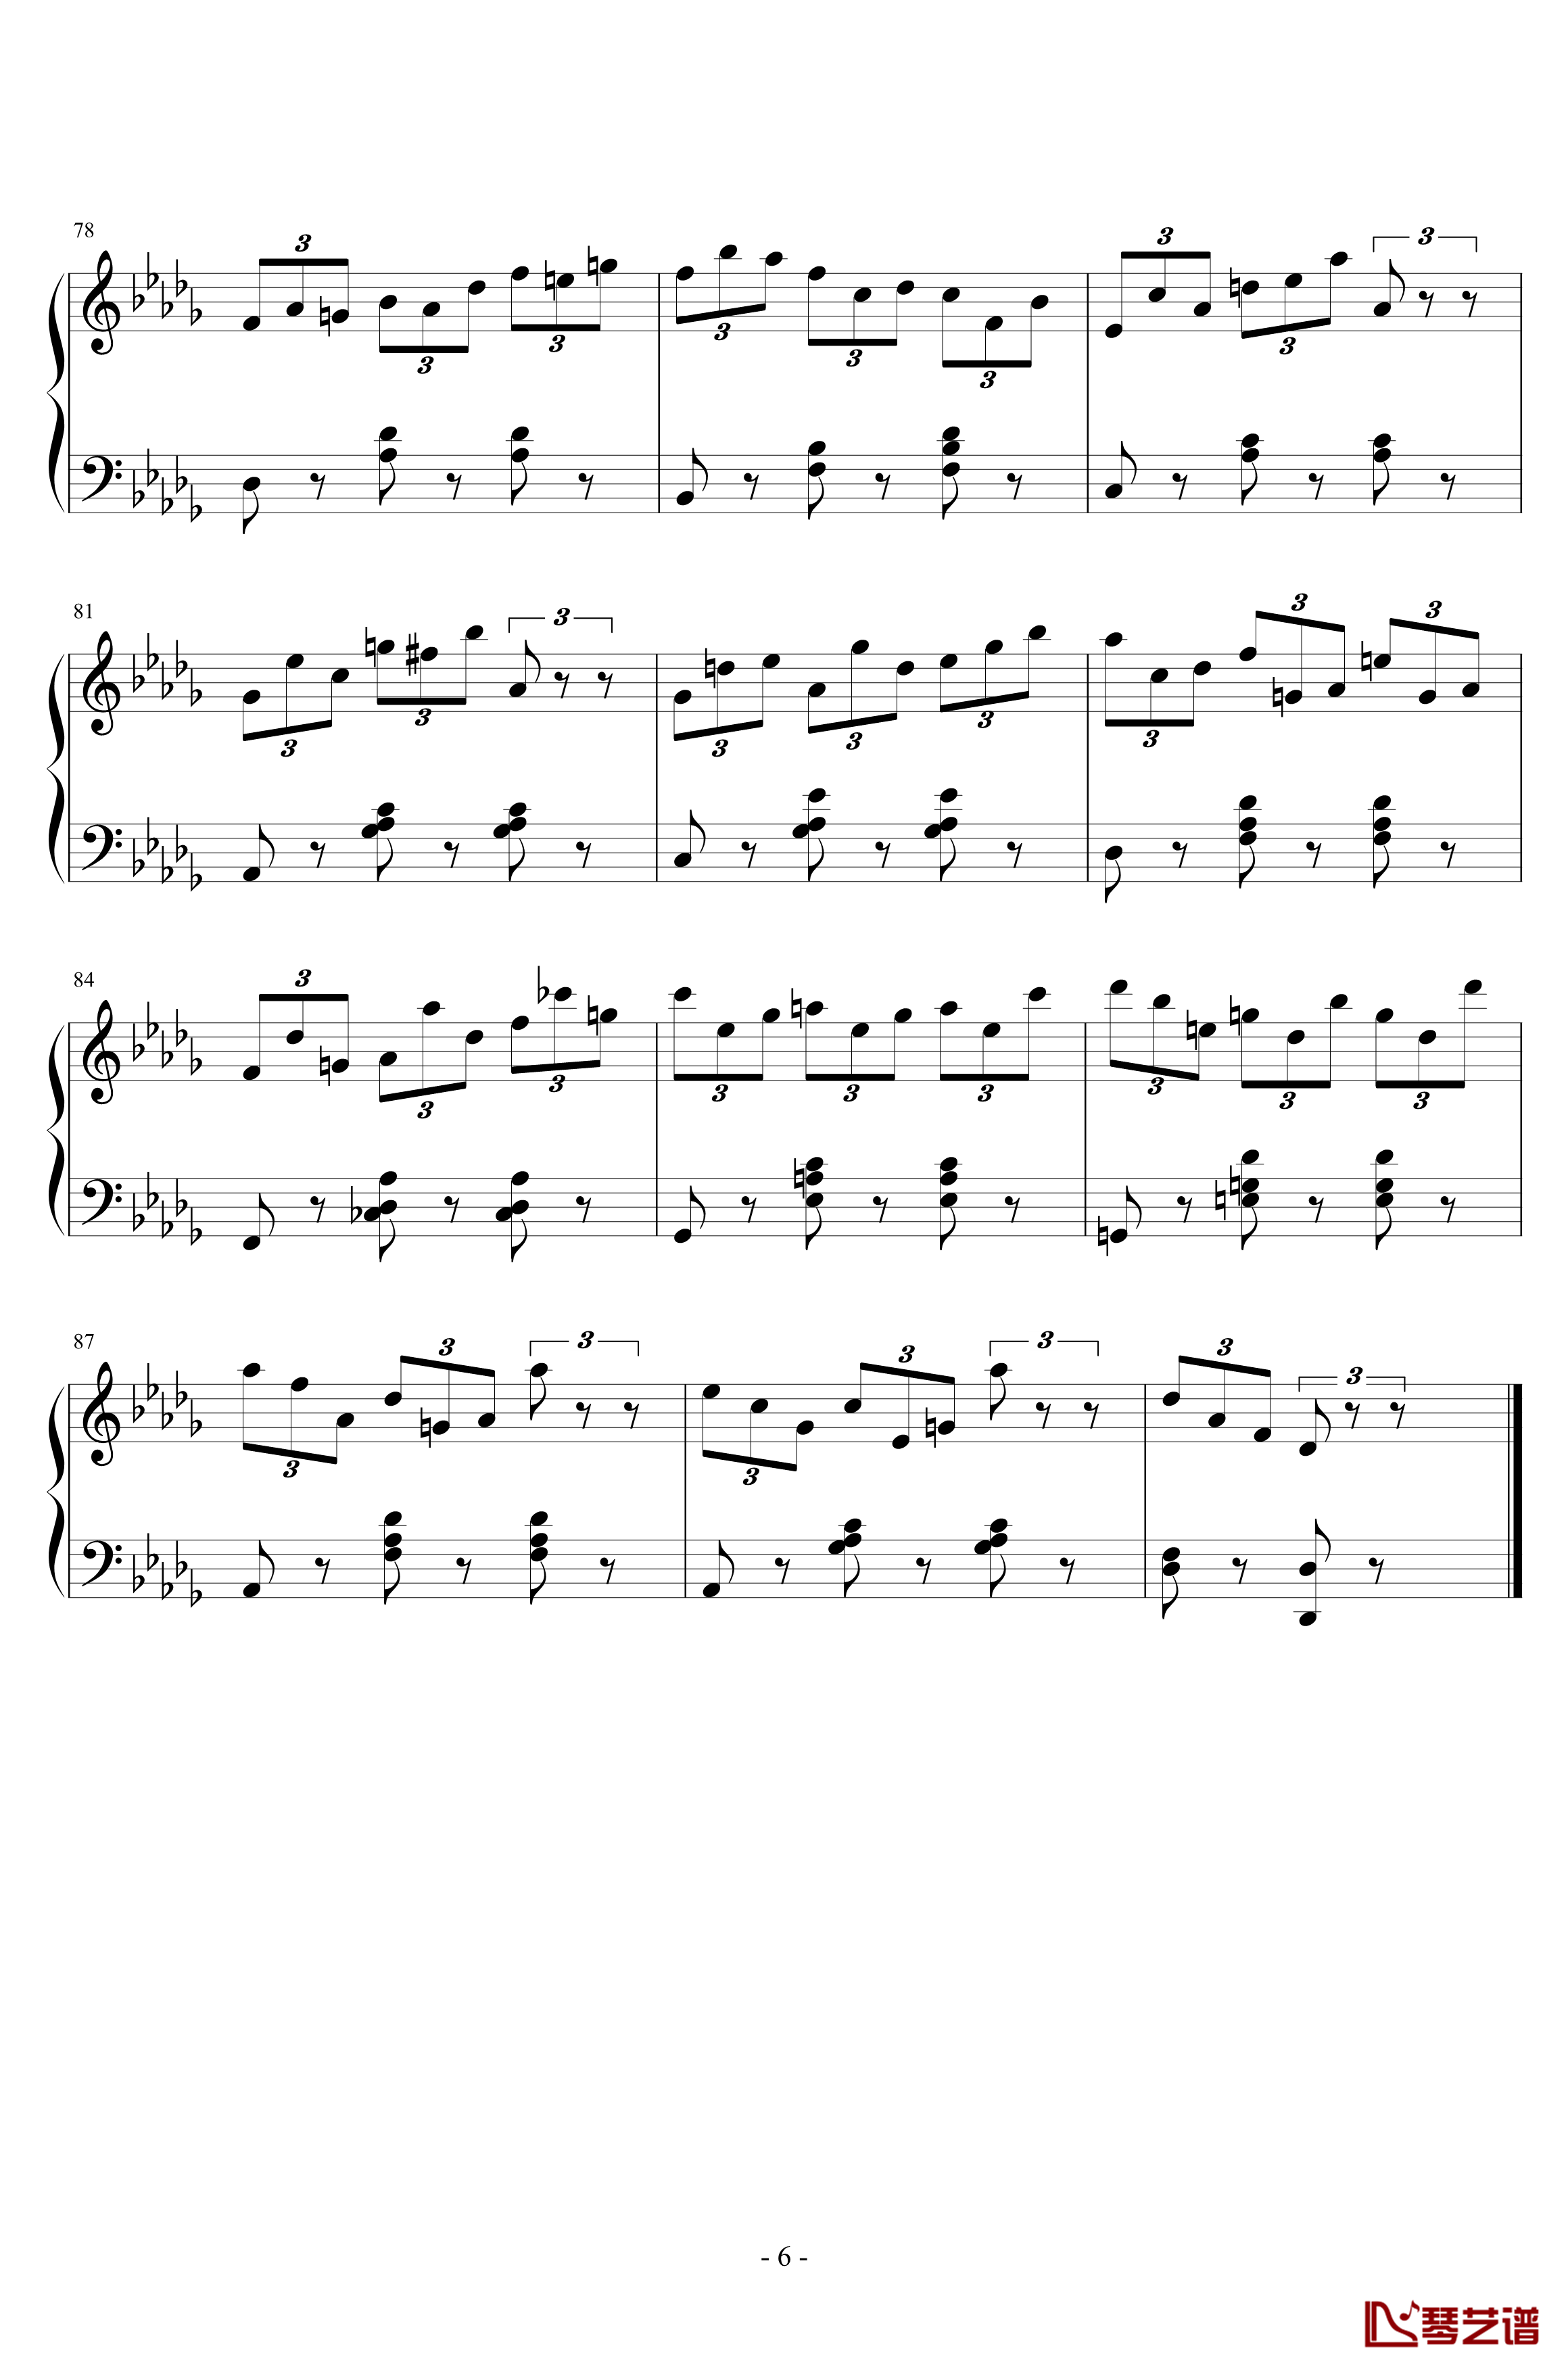 练习曲No.1 Op.6 降D大调练习曲钢琴谱-江畔新绿